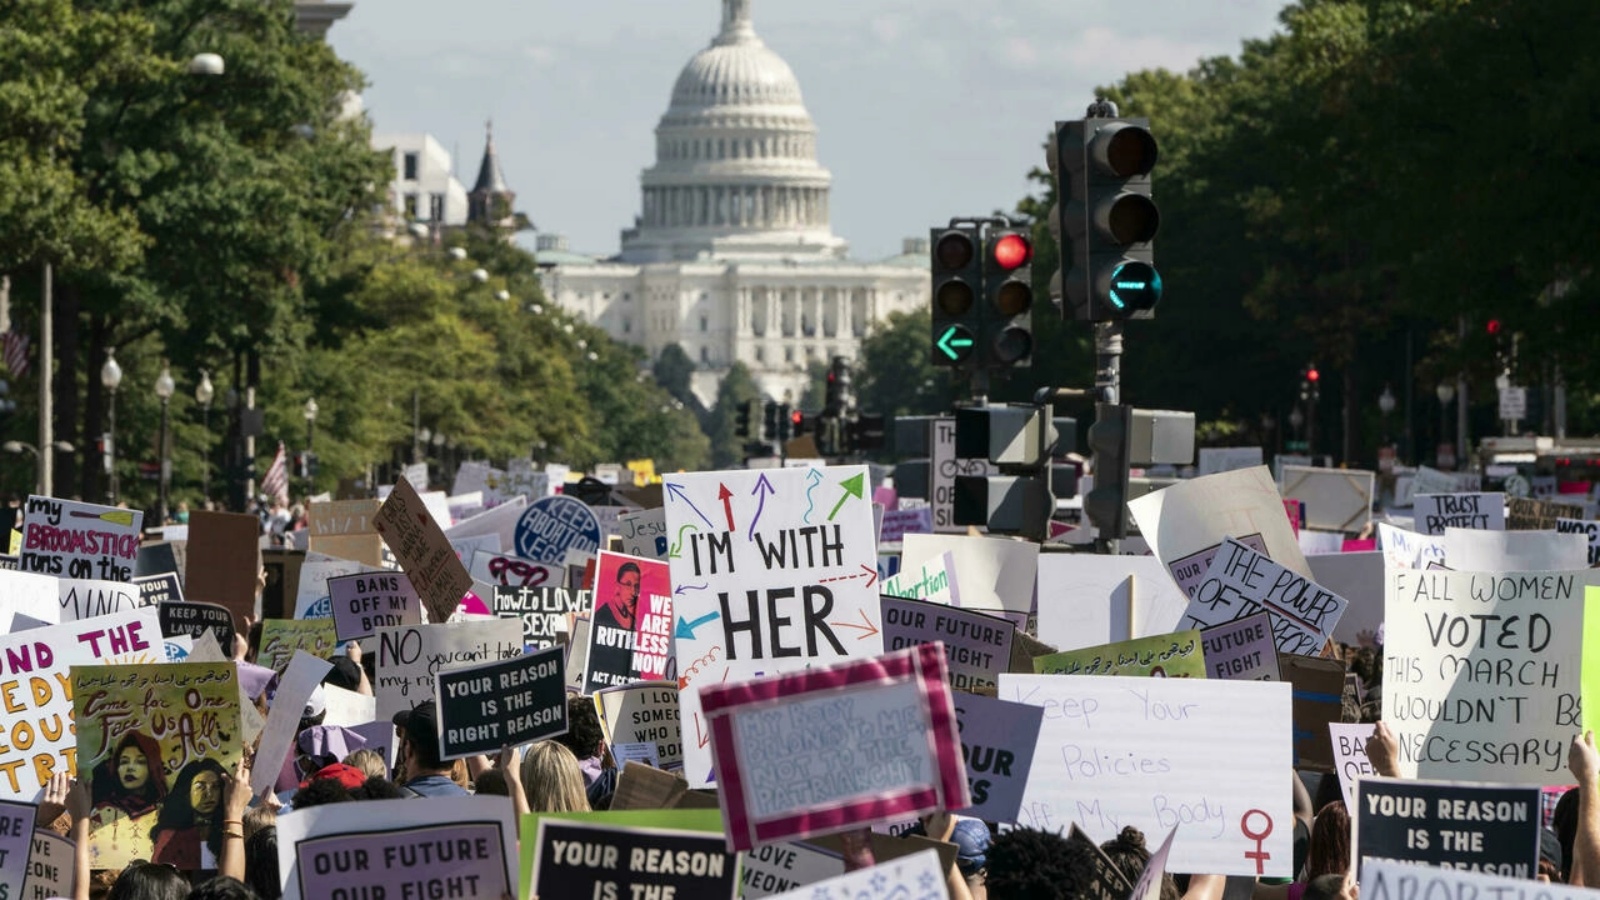 عشرات الآلاف من النساء تظاهرنَ إلى الشوارع في مدن عبر الولايات المتحدة نهاية الأسبوع الماضي، للمطالبة بحقوقهن الإنجابية.